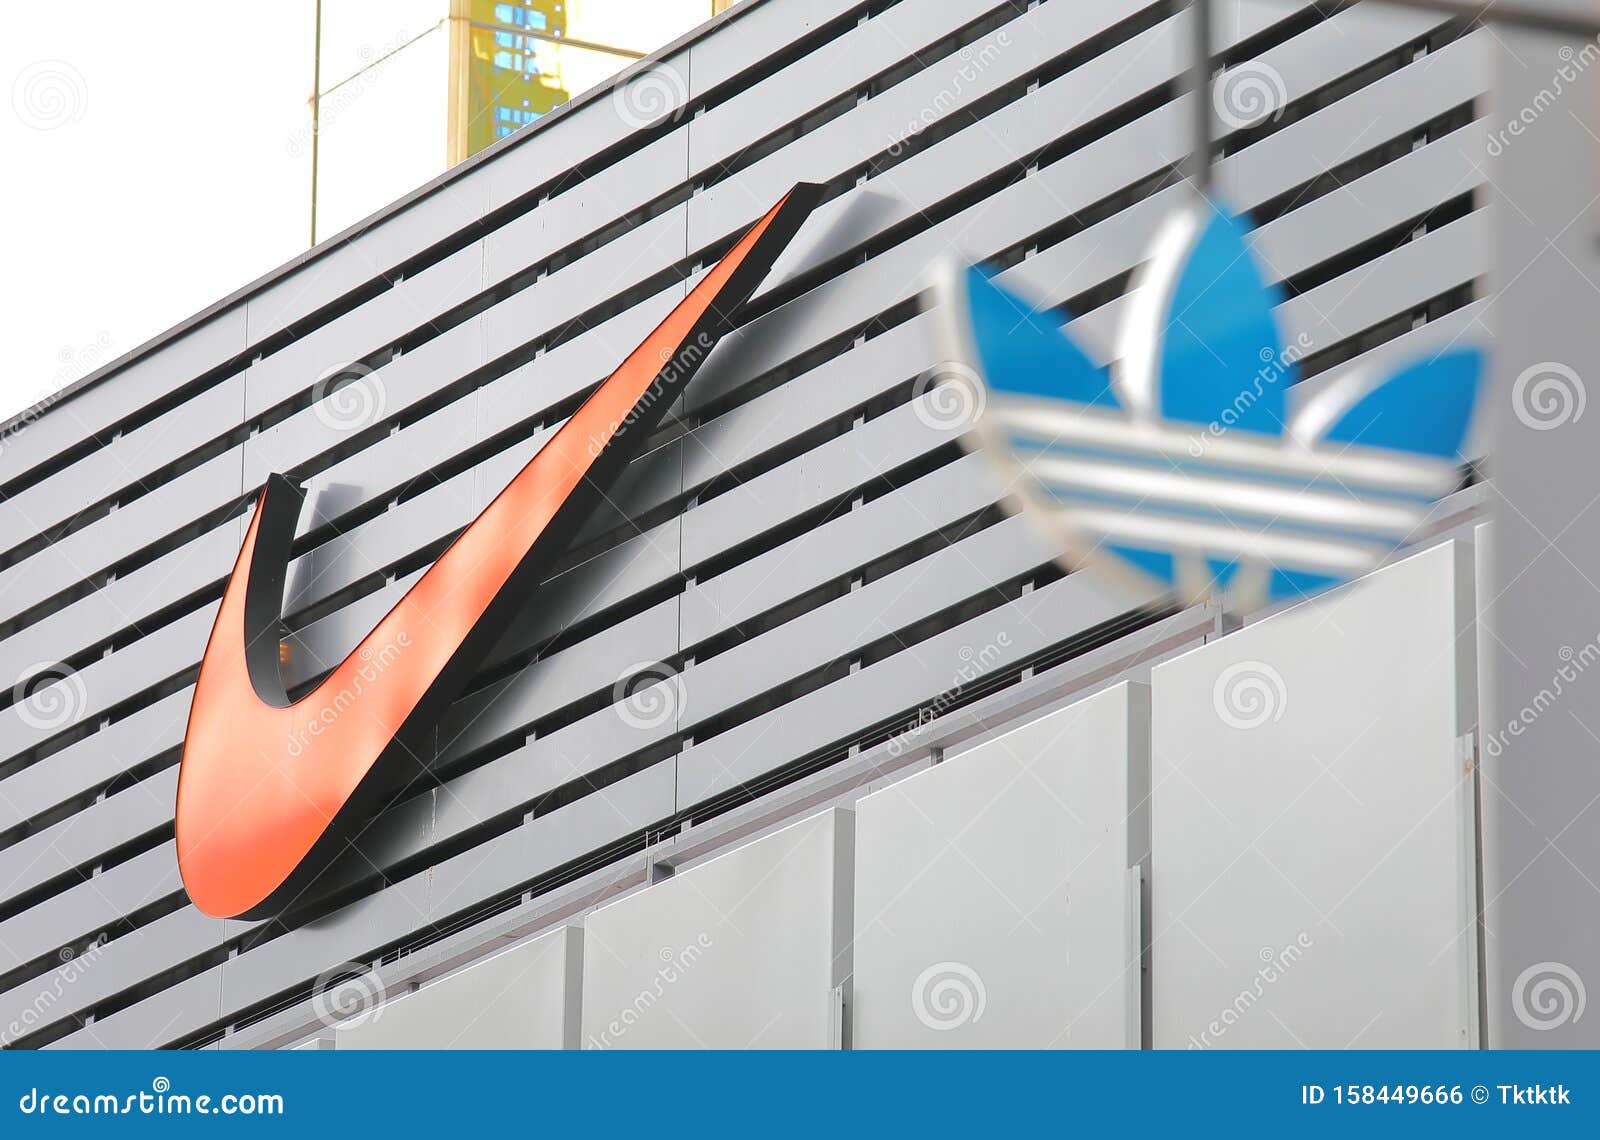 temblor Para editar perdonado Logo de la empresa Nike foto editorial. Imagen de deportes - 158449666